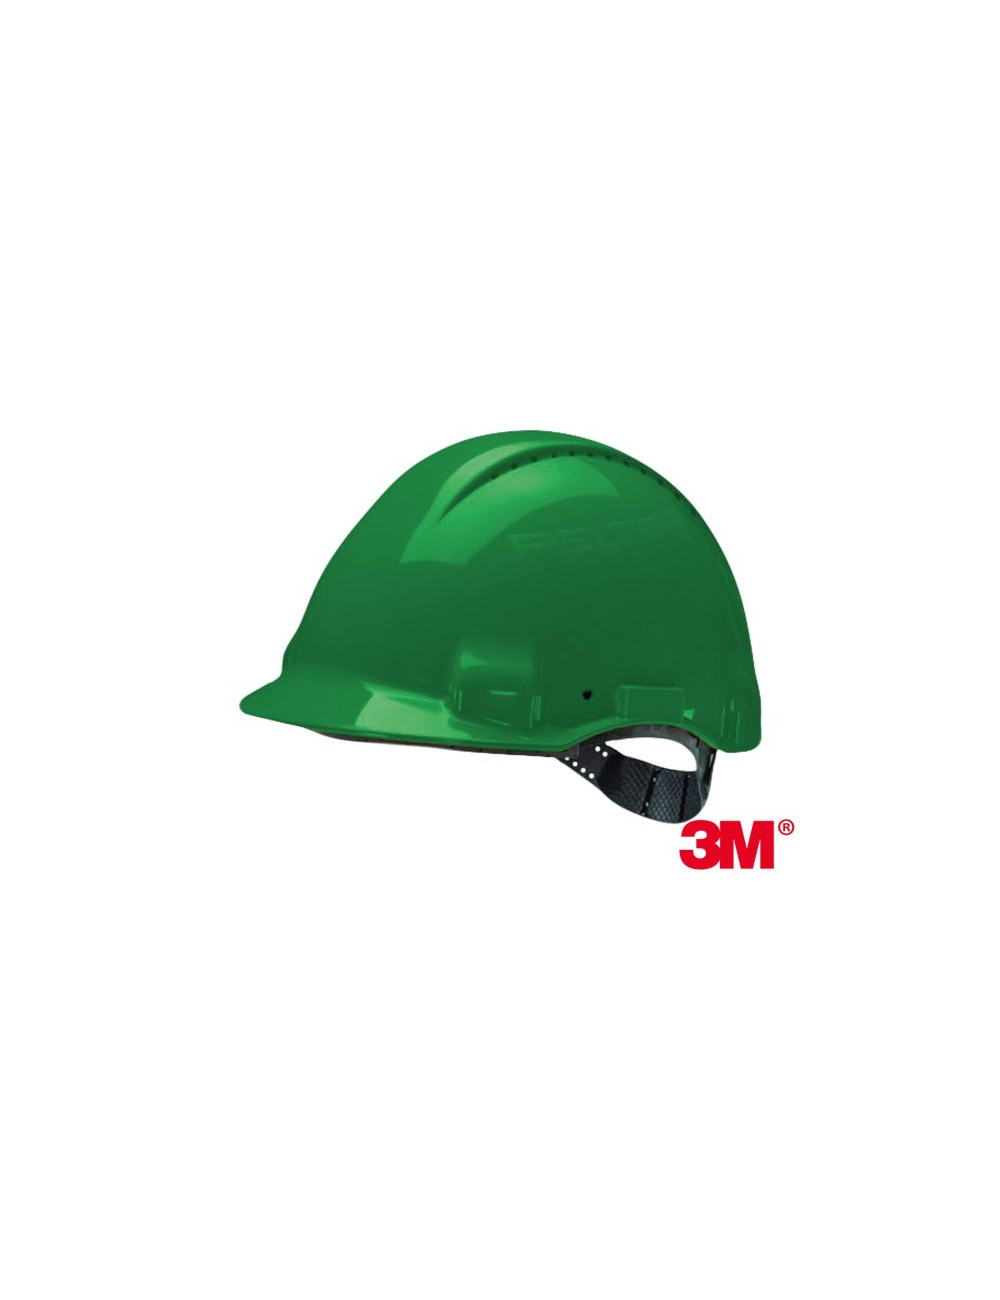 Schutzhelm mit grünem 3M 3m-kas-solaris